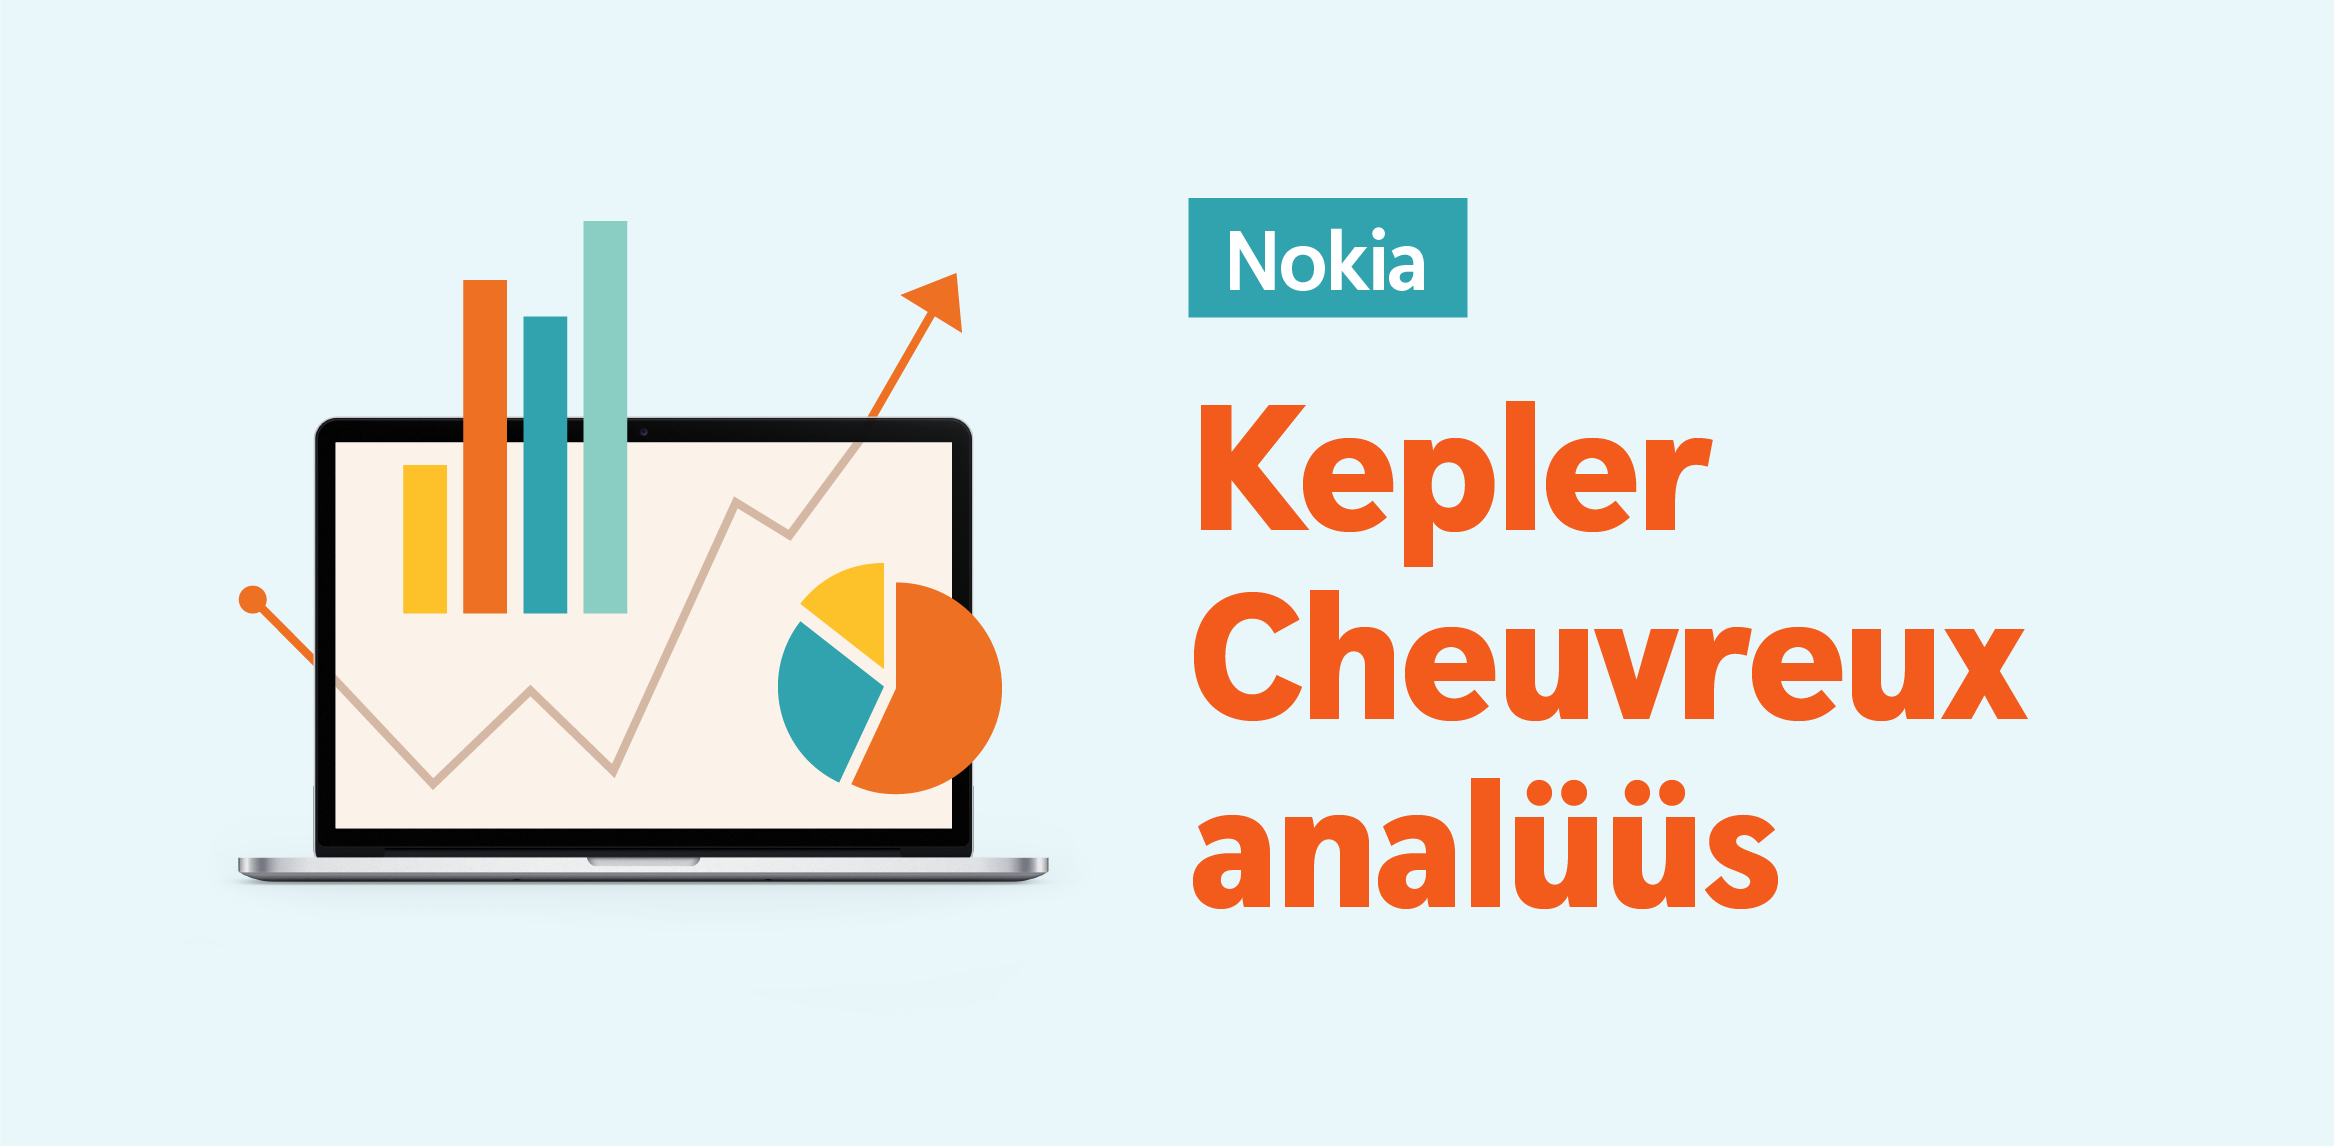 Kepler Cheuvreux langetas Nokia aktsia hinnasihti